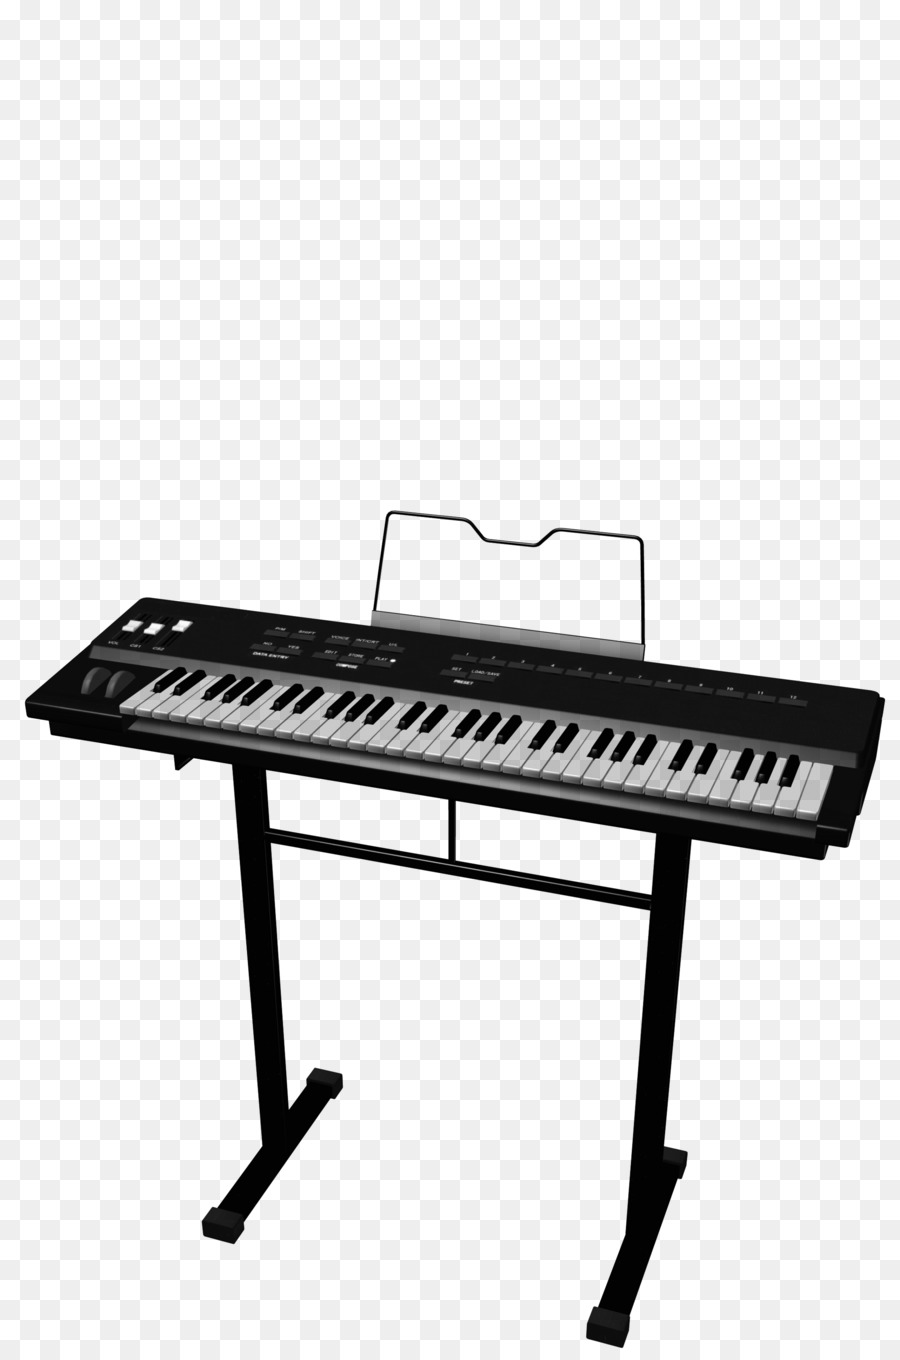 Digital piano Elettrico, pianoforte, tastiera Elettronica tastiera Musicale pianola - pianoforte